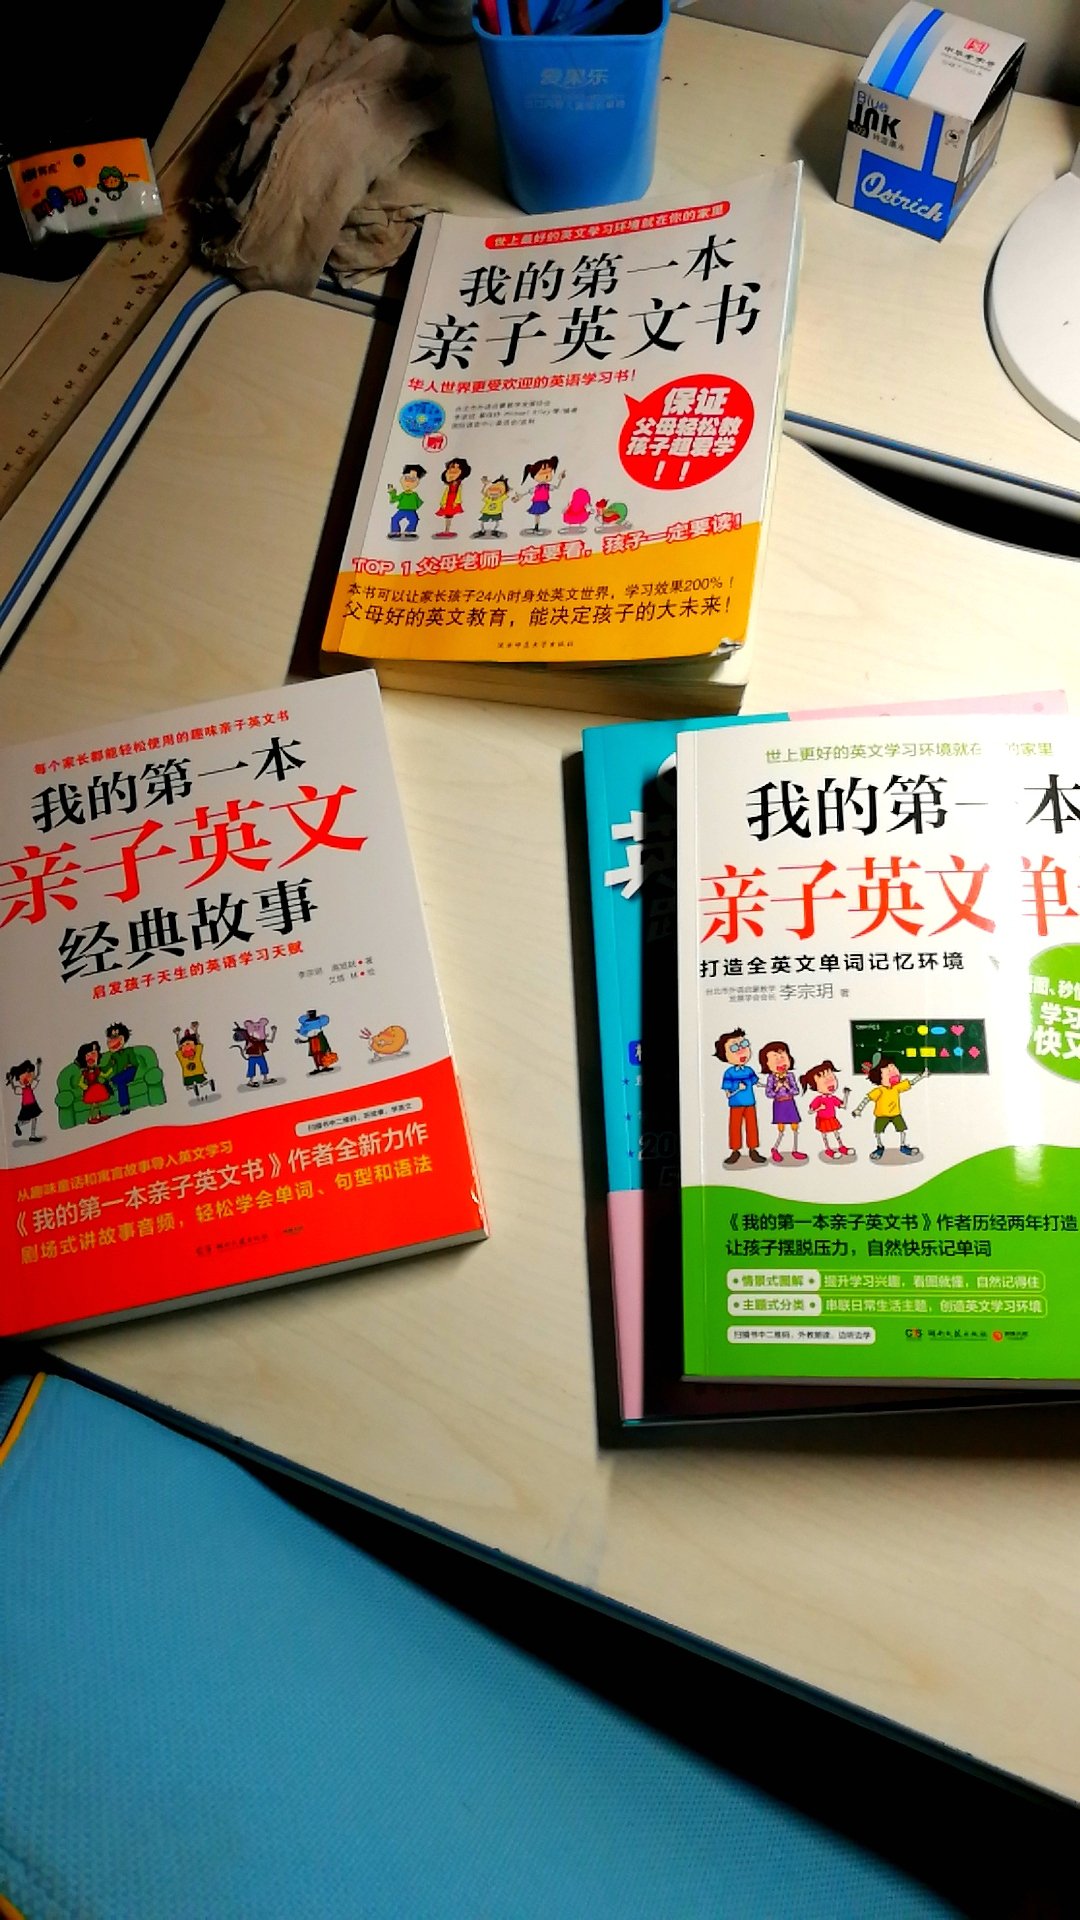 先是买了我的第一本亲子英文书，质量很好！一下李宗玥老师温柔，妈妈一般的感觉真好！所以就买了系列配合的书的